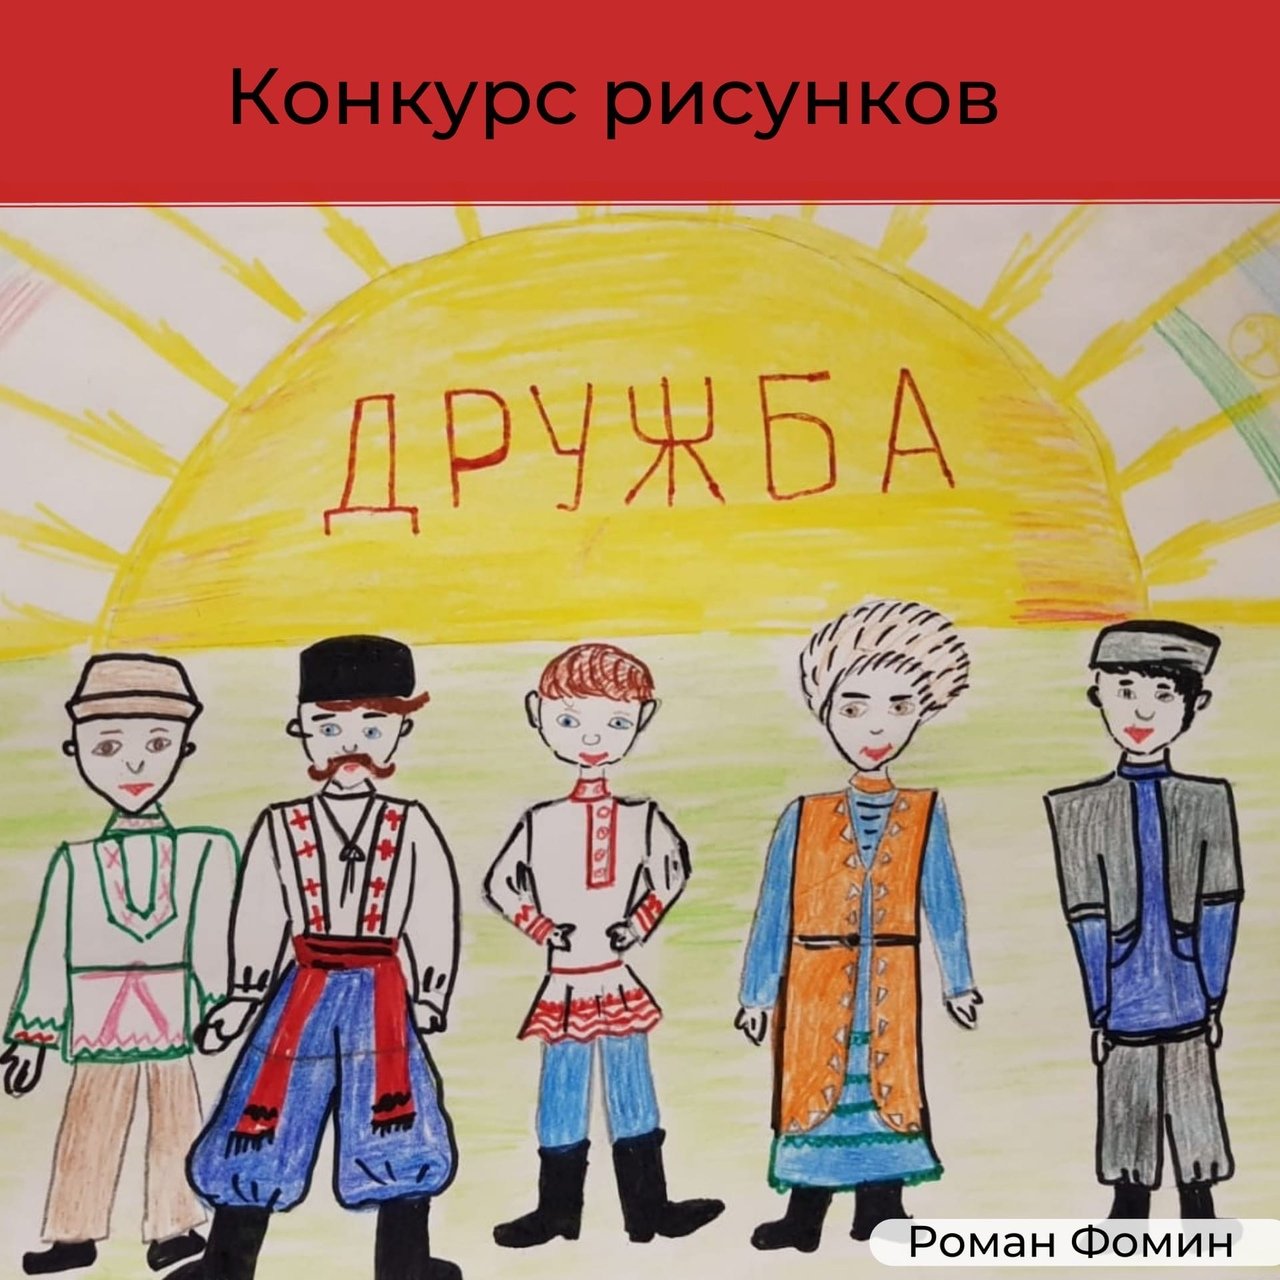 В дружбе народов единство Дагестана рисунок